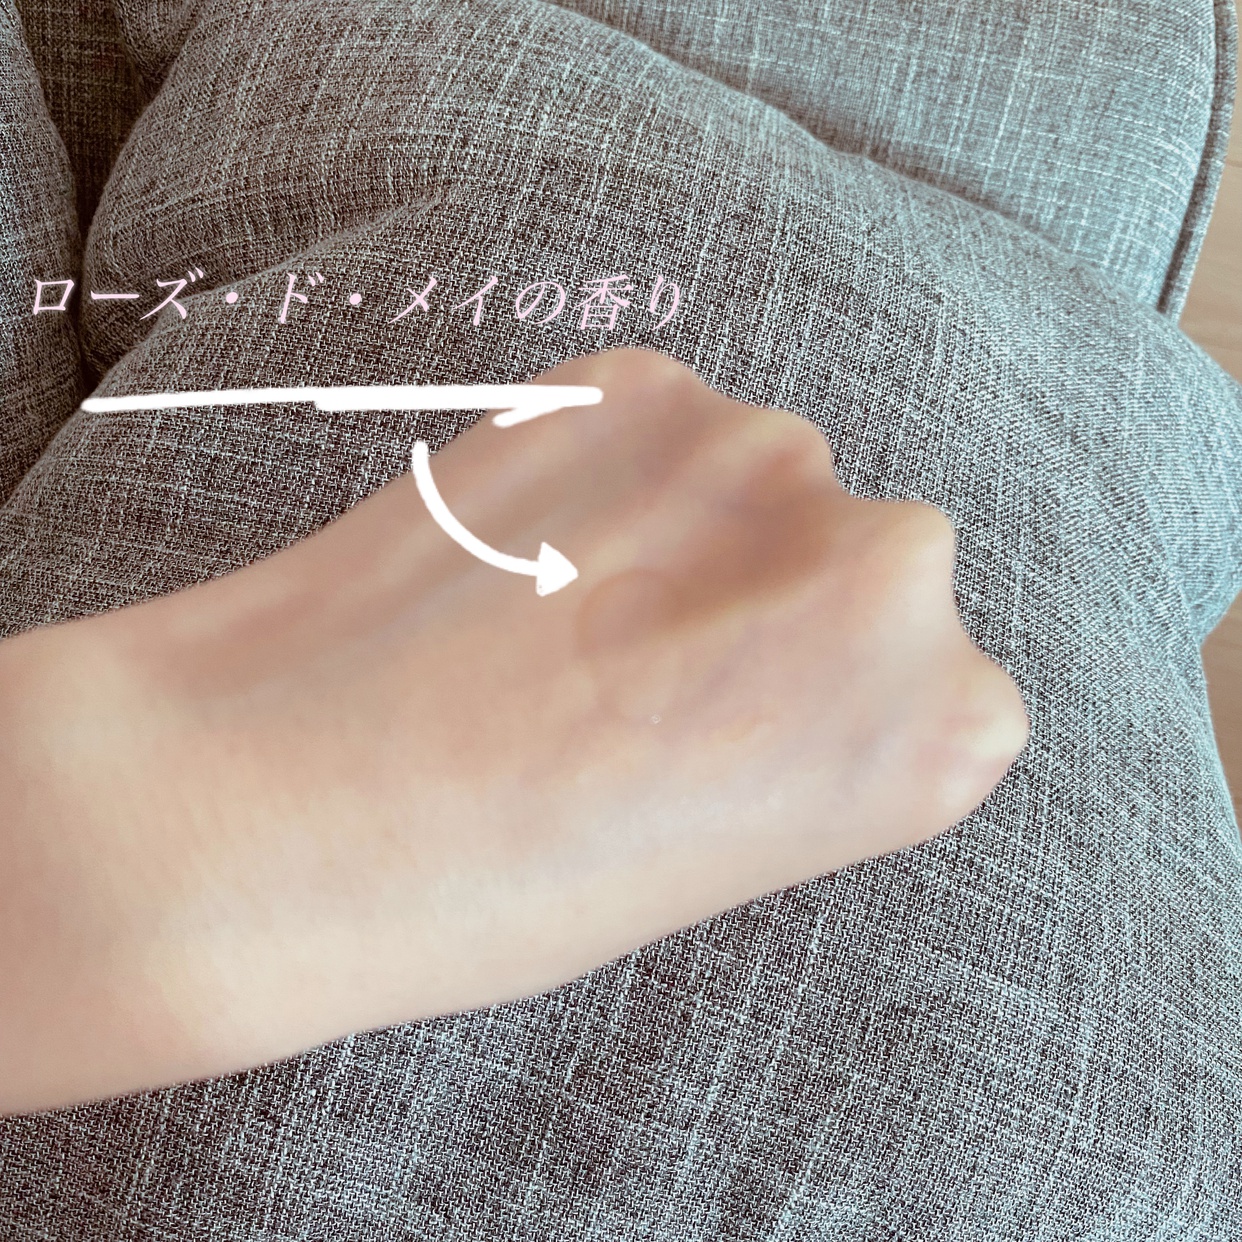 Aujua(オージュア) イミュライズ エクシードセラムを使ったkanaさんのクチコミ画像4